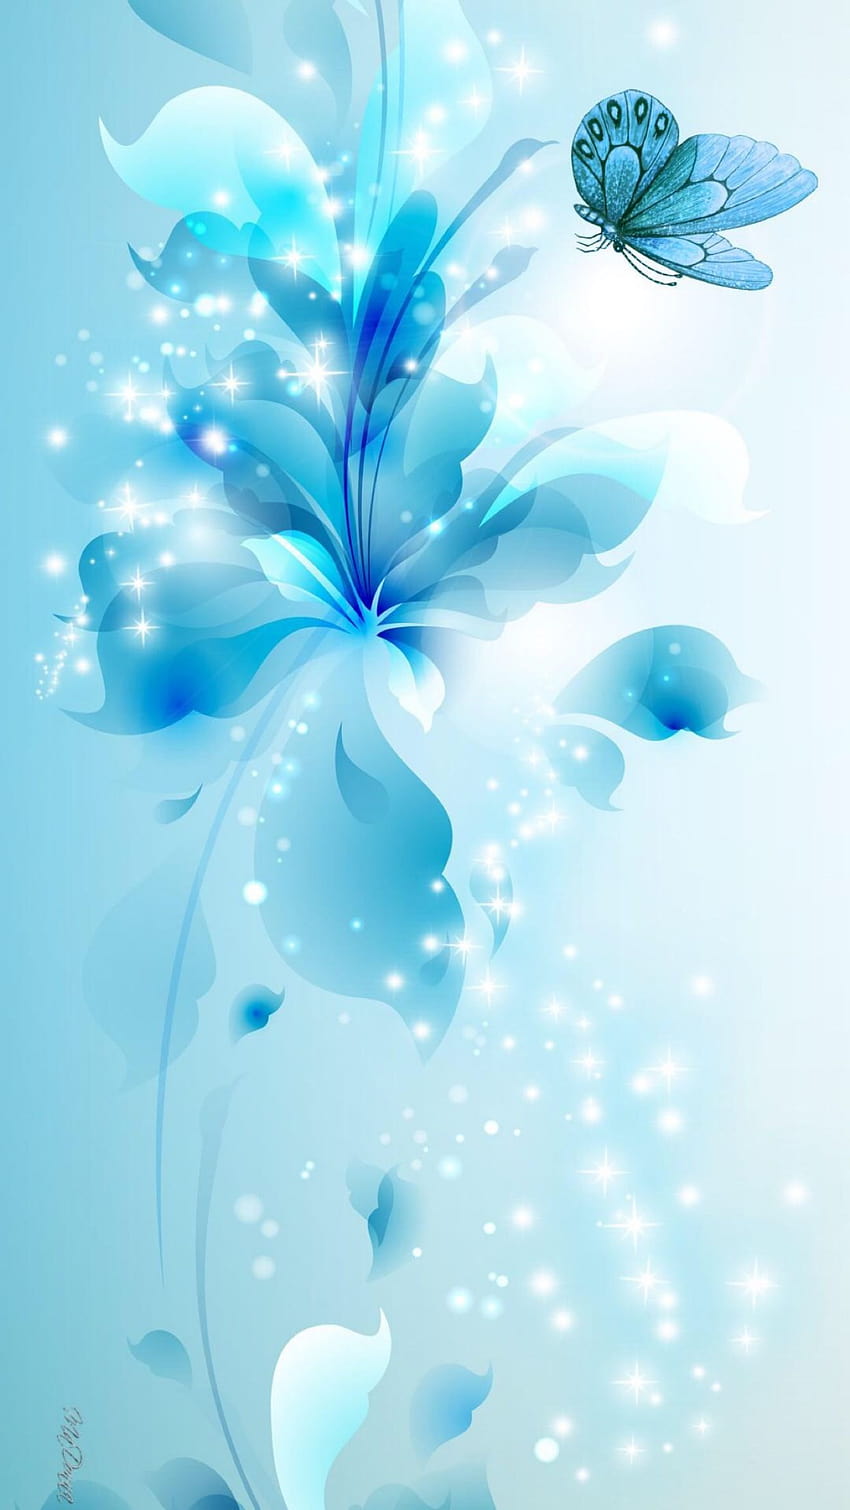 Mavi, Turkuaz, ışık, soyut, kelebek, çiçekler, elma, iPhone, temiz, bea… 2020'de, açık renk soyut mobil HD telefon duvar kağıdı